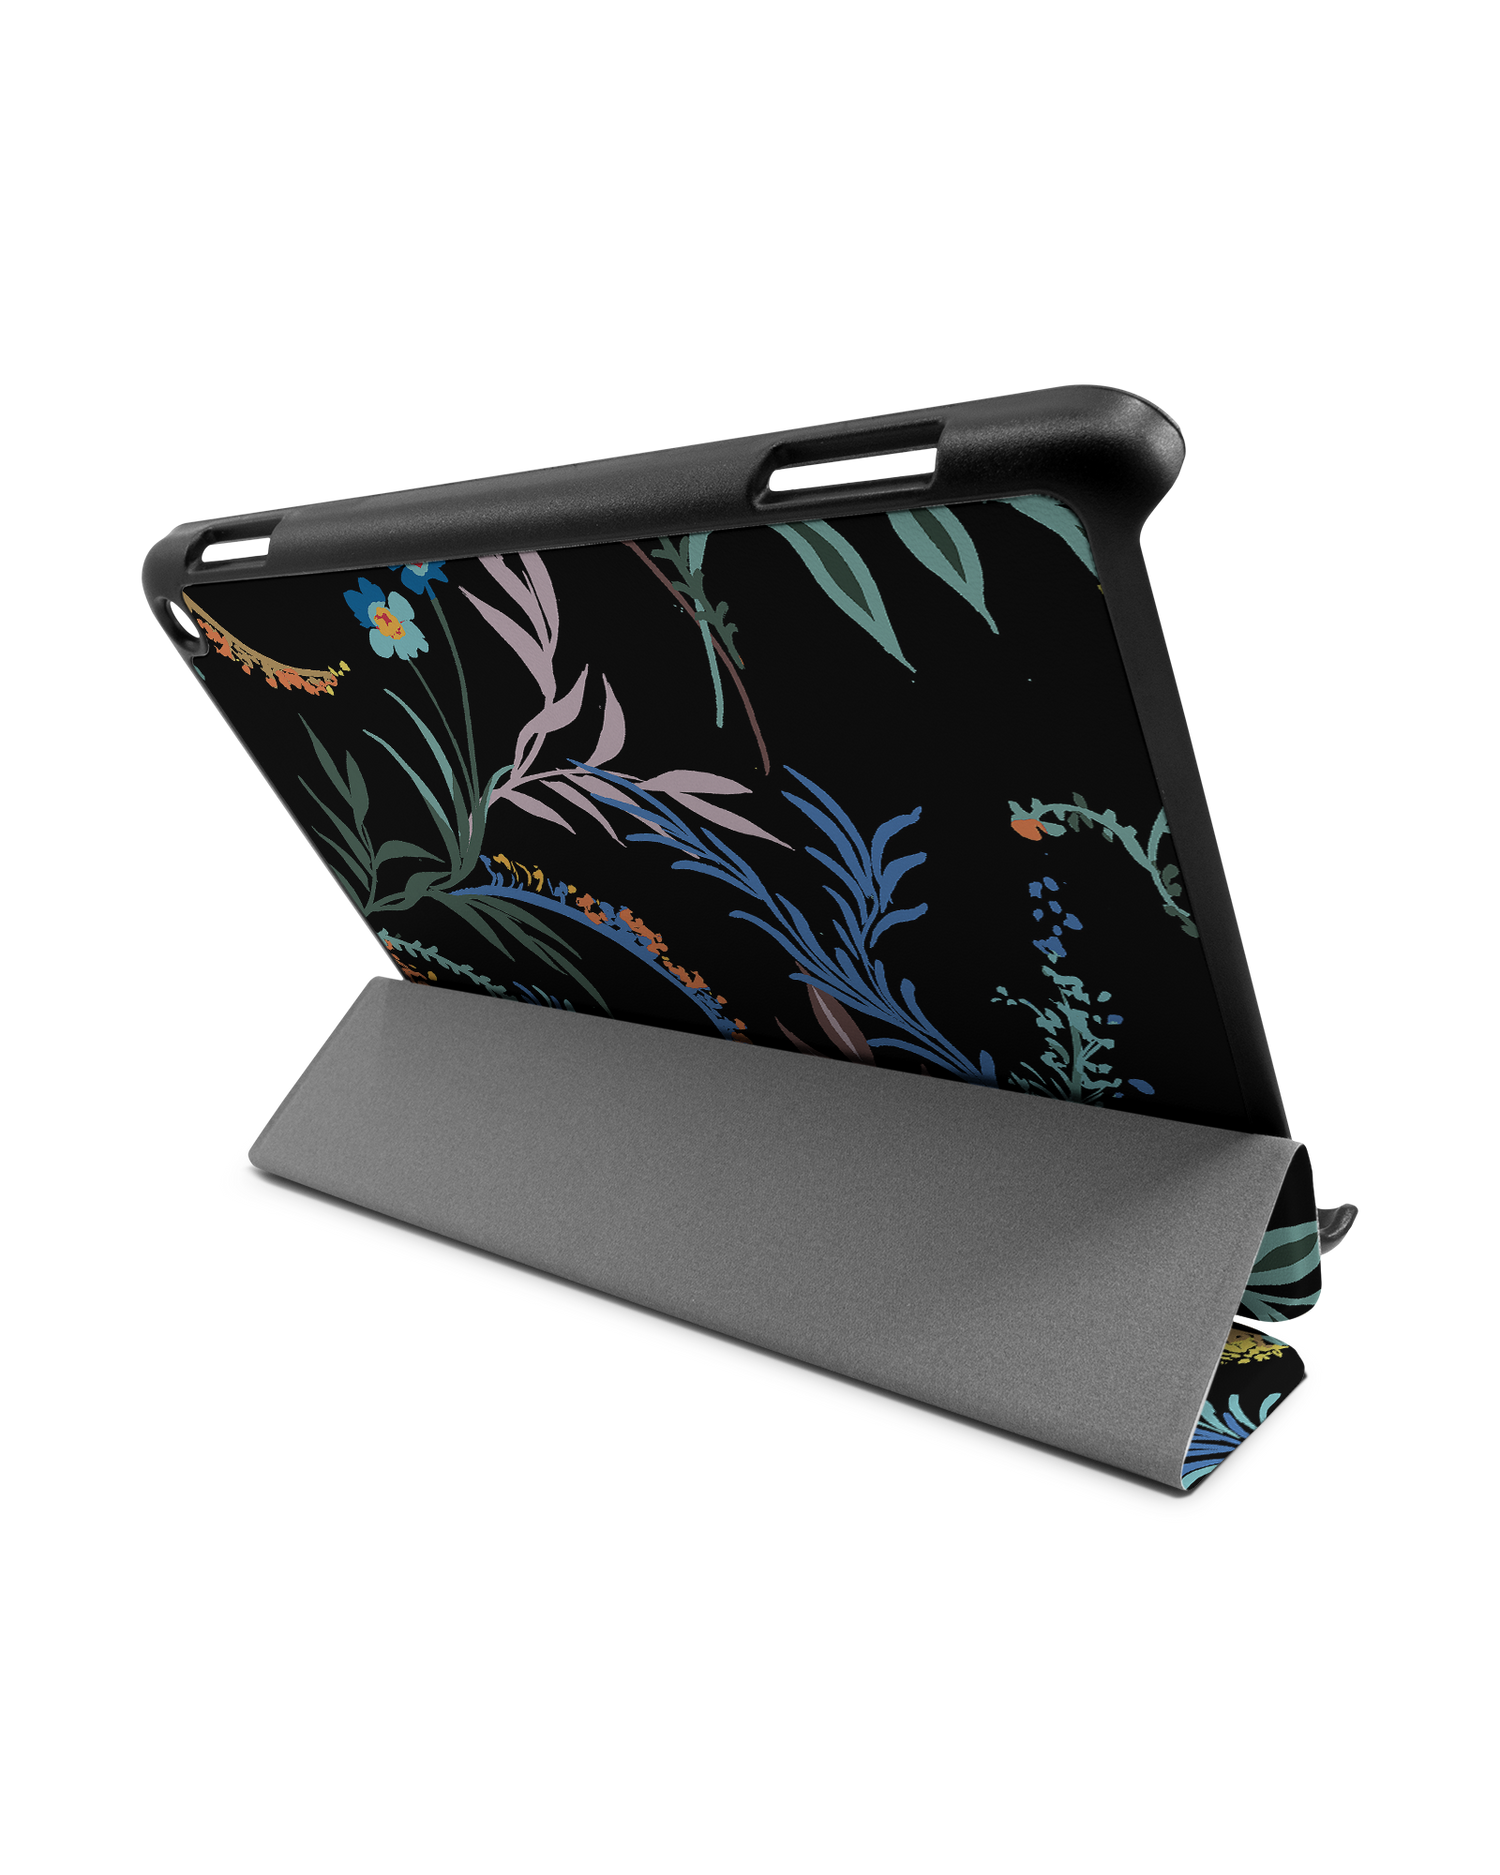 Woodland Spring Floral Tablet Smart Case for Amazon Fire HD 8 (2022), Amazon Fire HD 8 Plus (2022), Amazon Fire HD 8 (2020), Amazon Fire HD 8 Plus (2020): Used as Stand